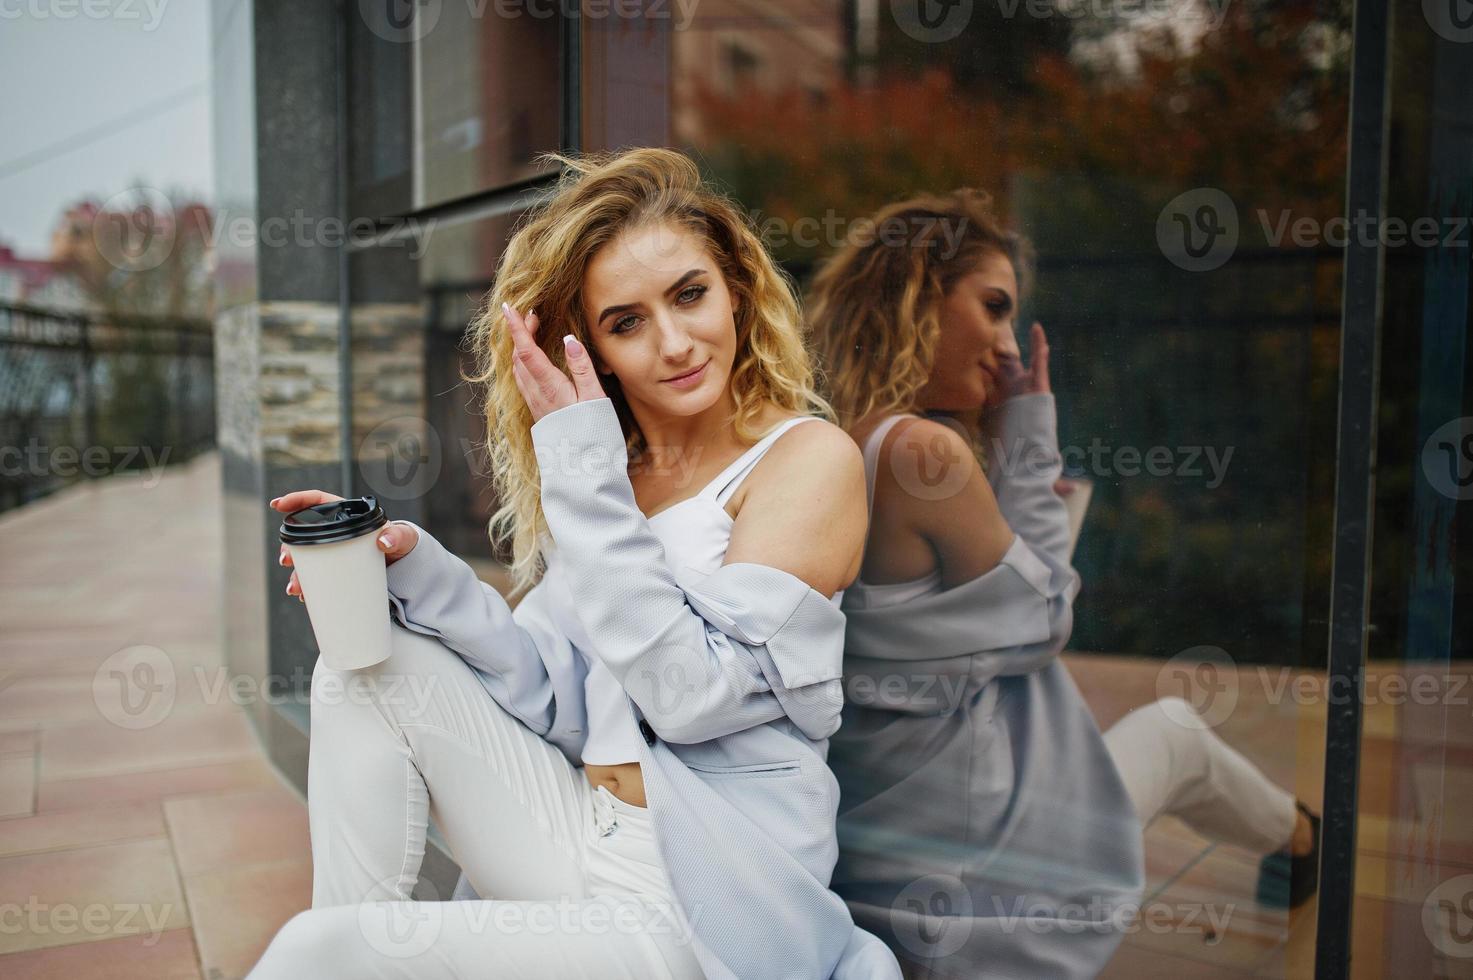 menina elegante modelo loira encaracolada usar branco com uma xícara de café na mão posando contra a grande janela. foto